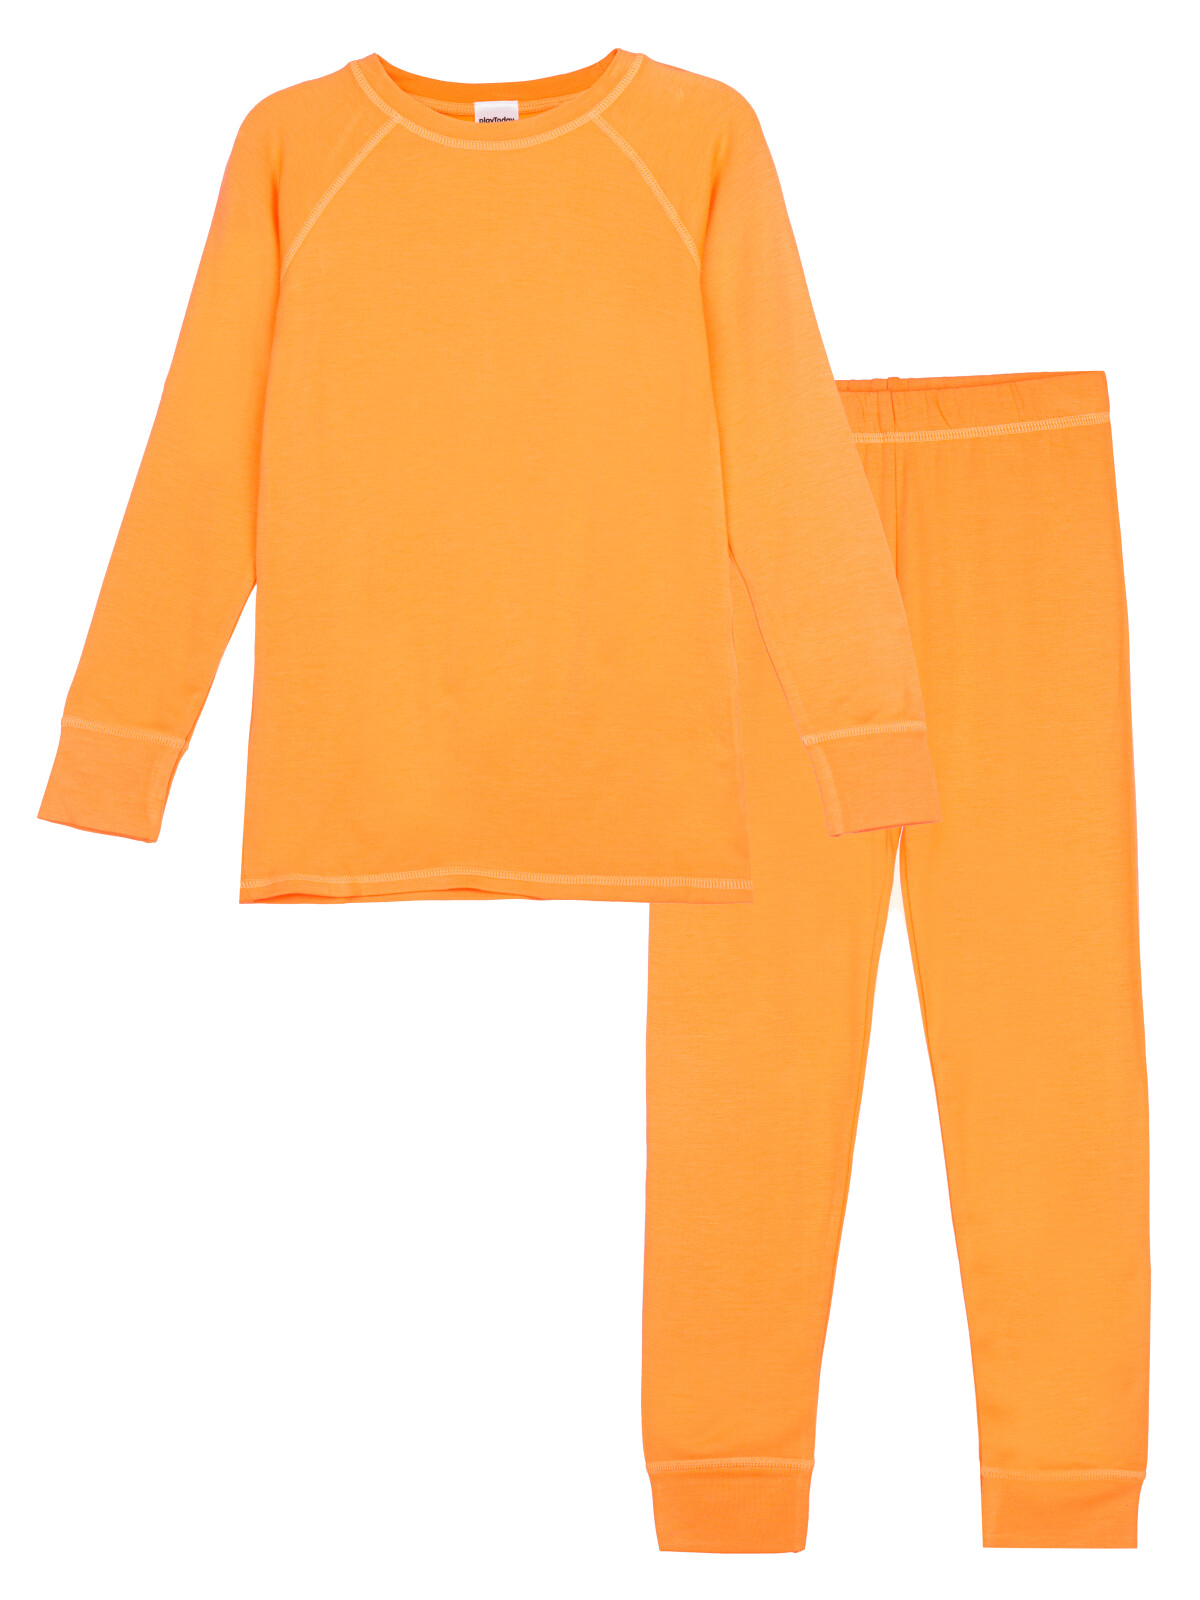 Термокомплект для девочек PlayToday: брюки, толстовка, оранжевый, 116